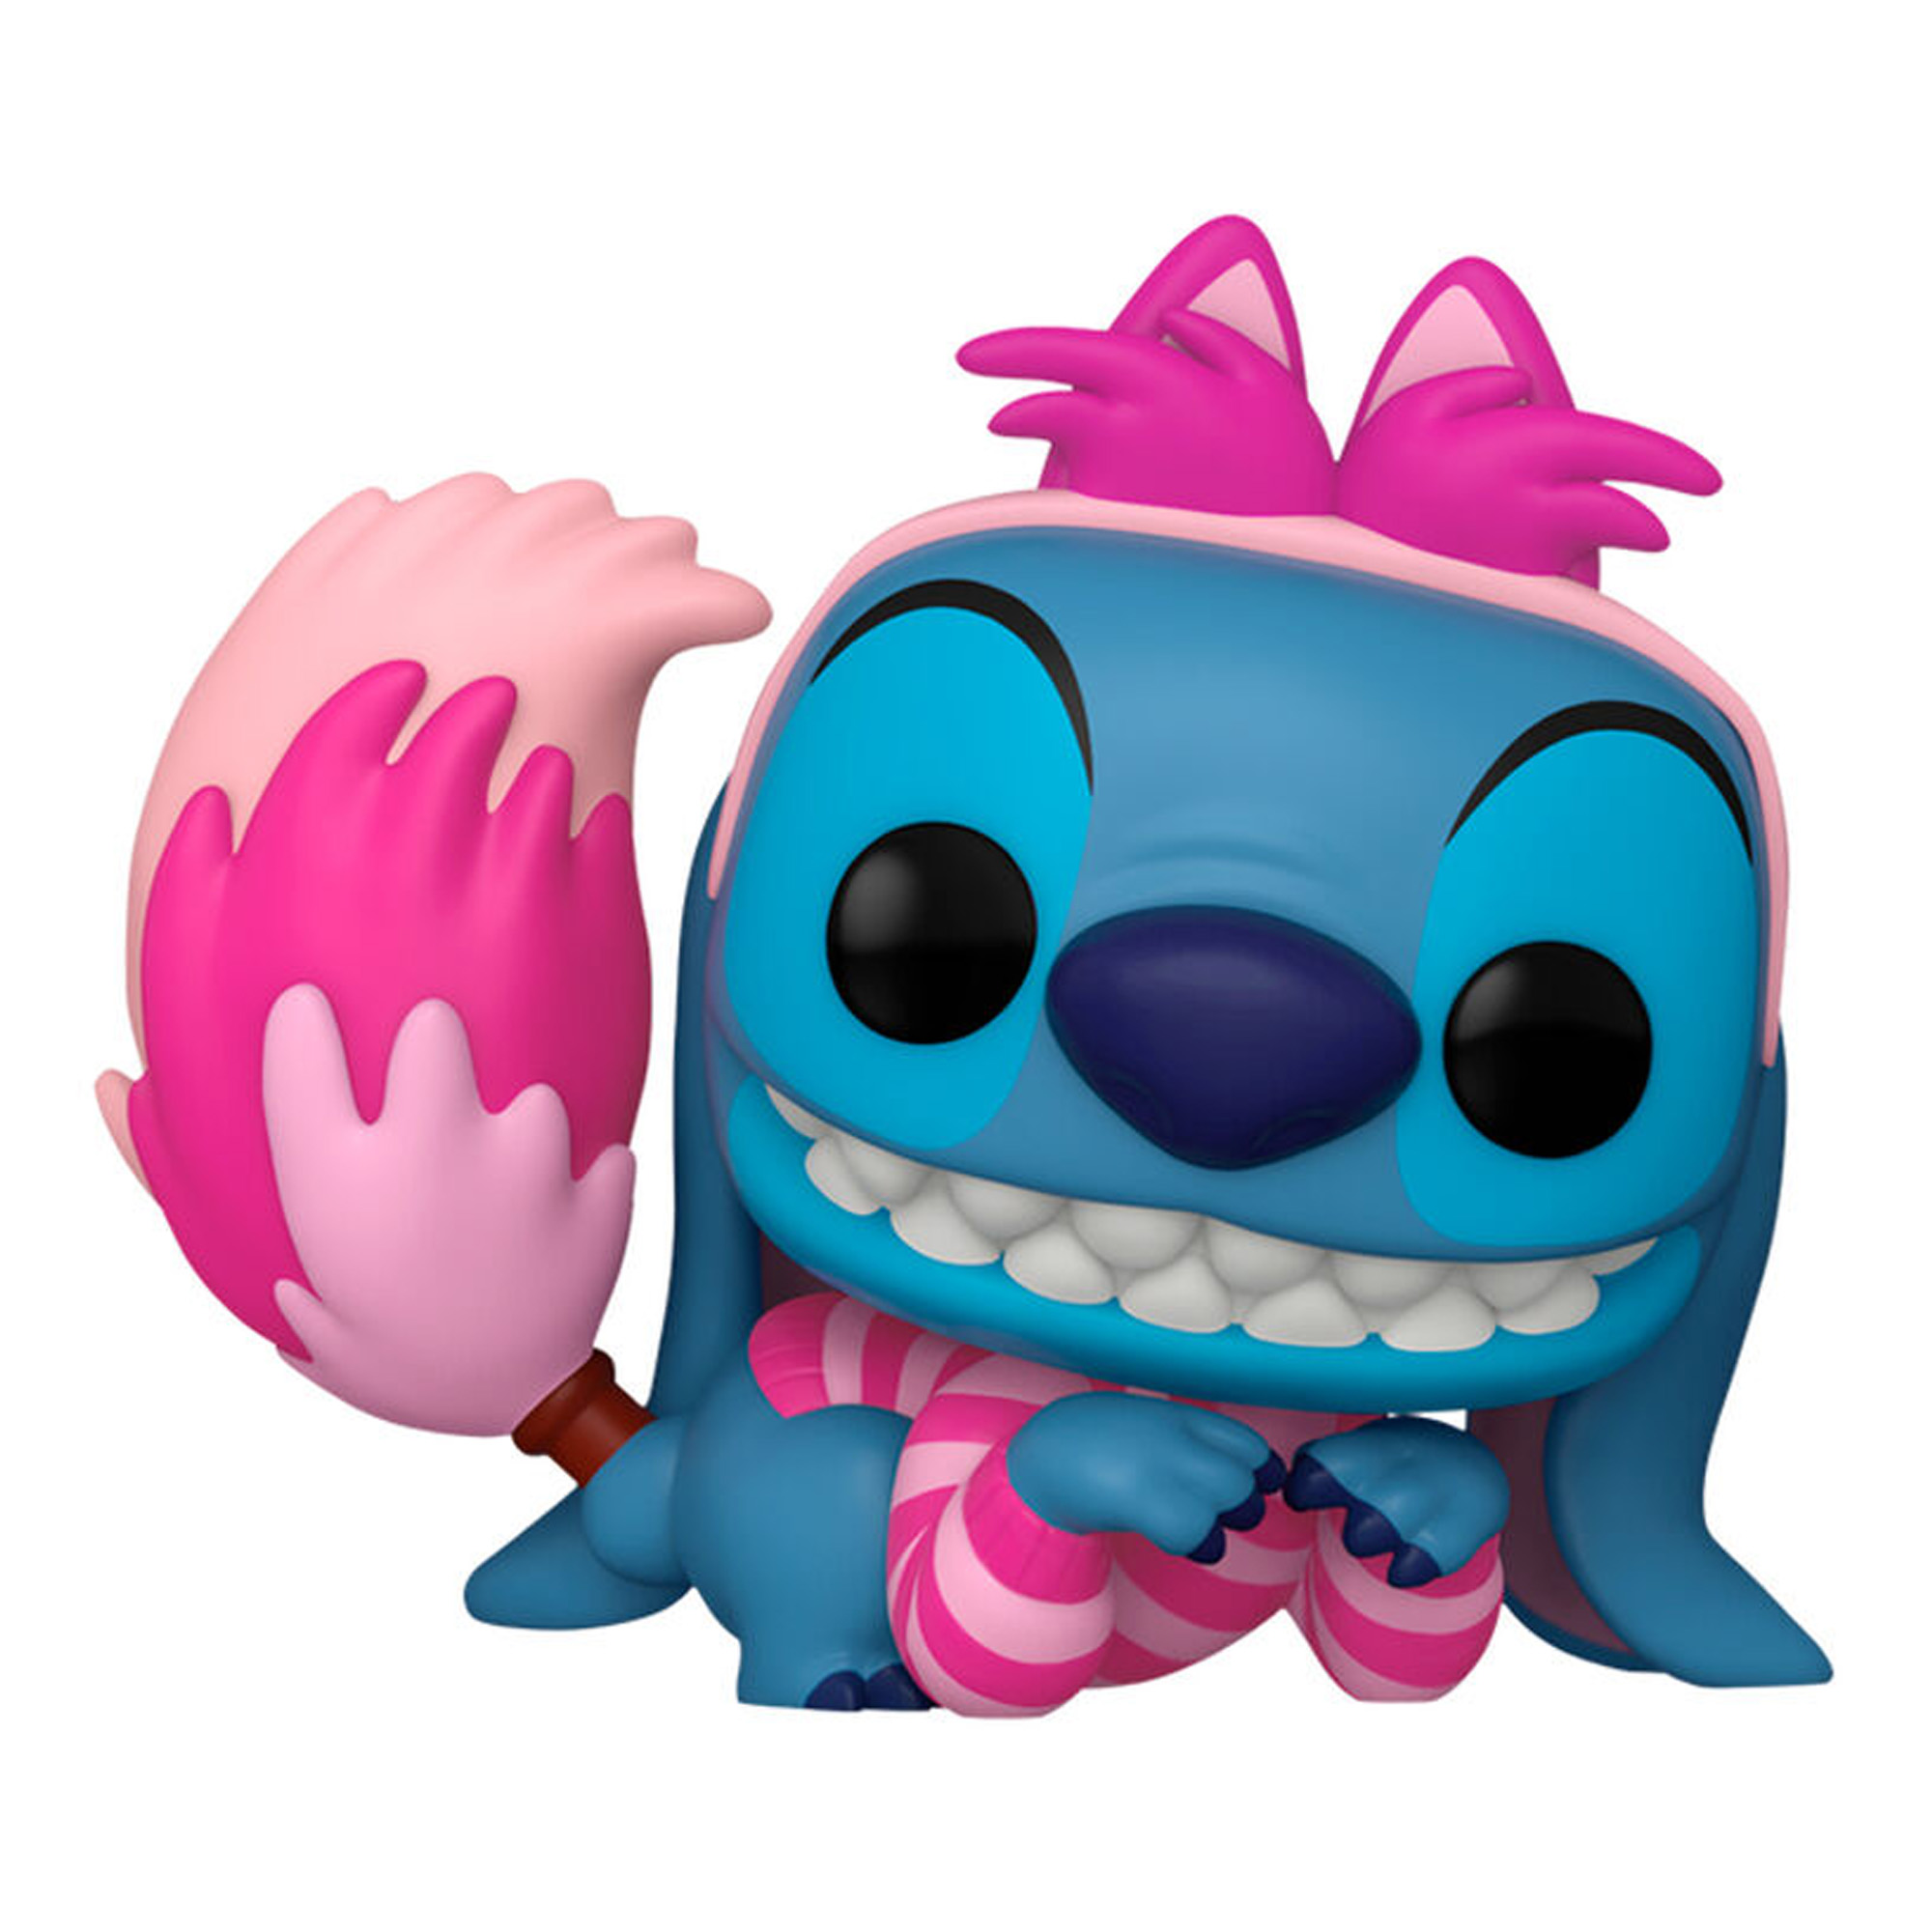 Funko POP! Stitch as Cheshire Cat 1460 - Disney Lilo & Stitch